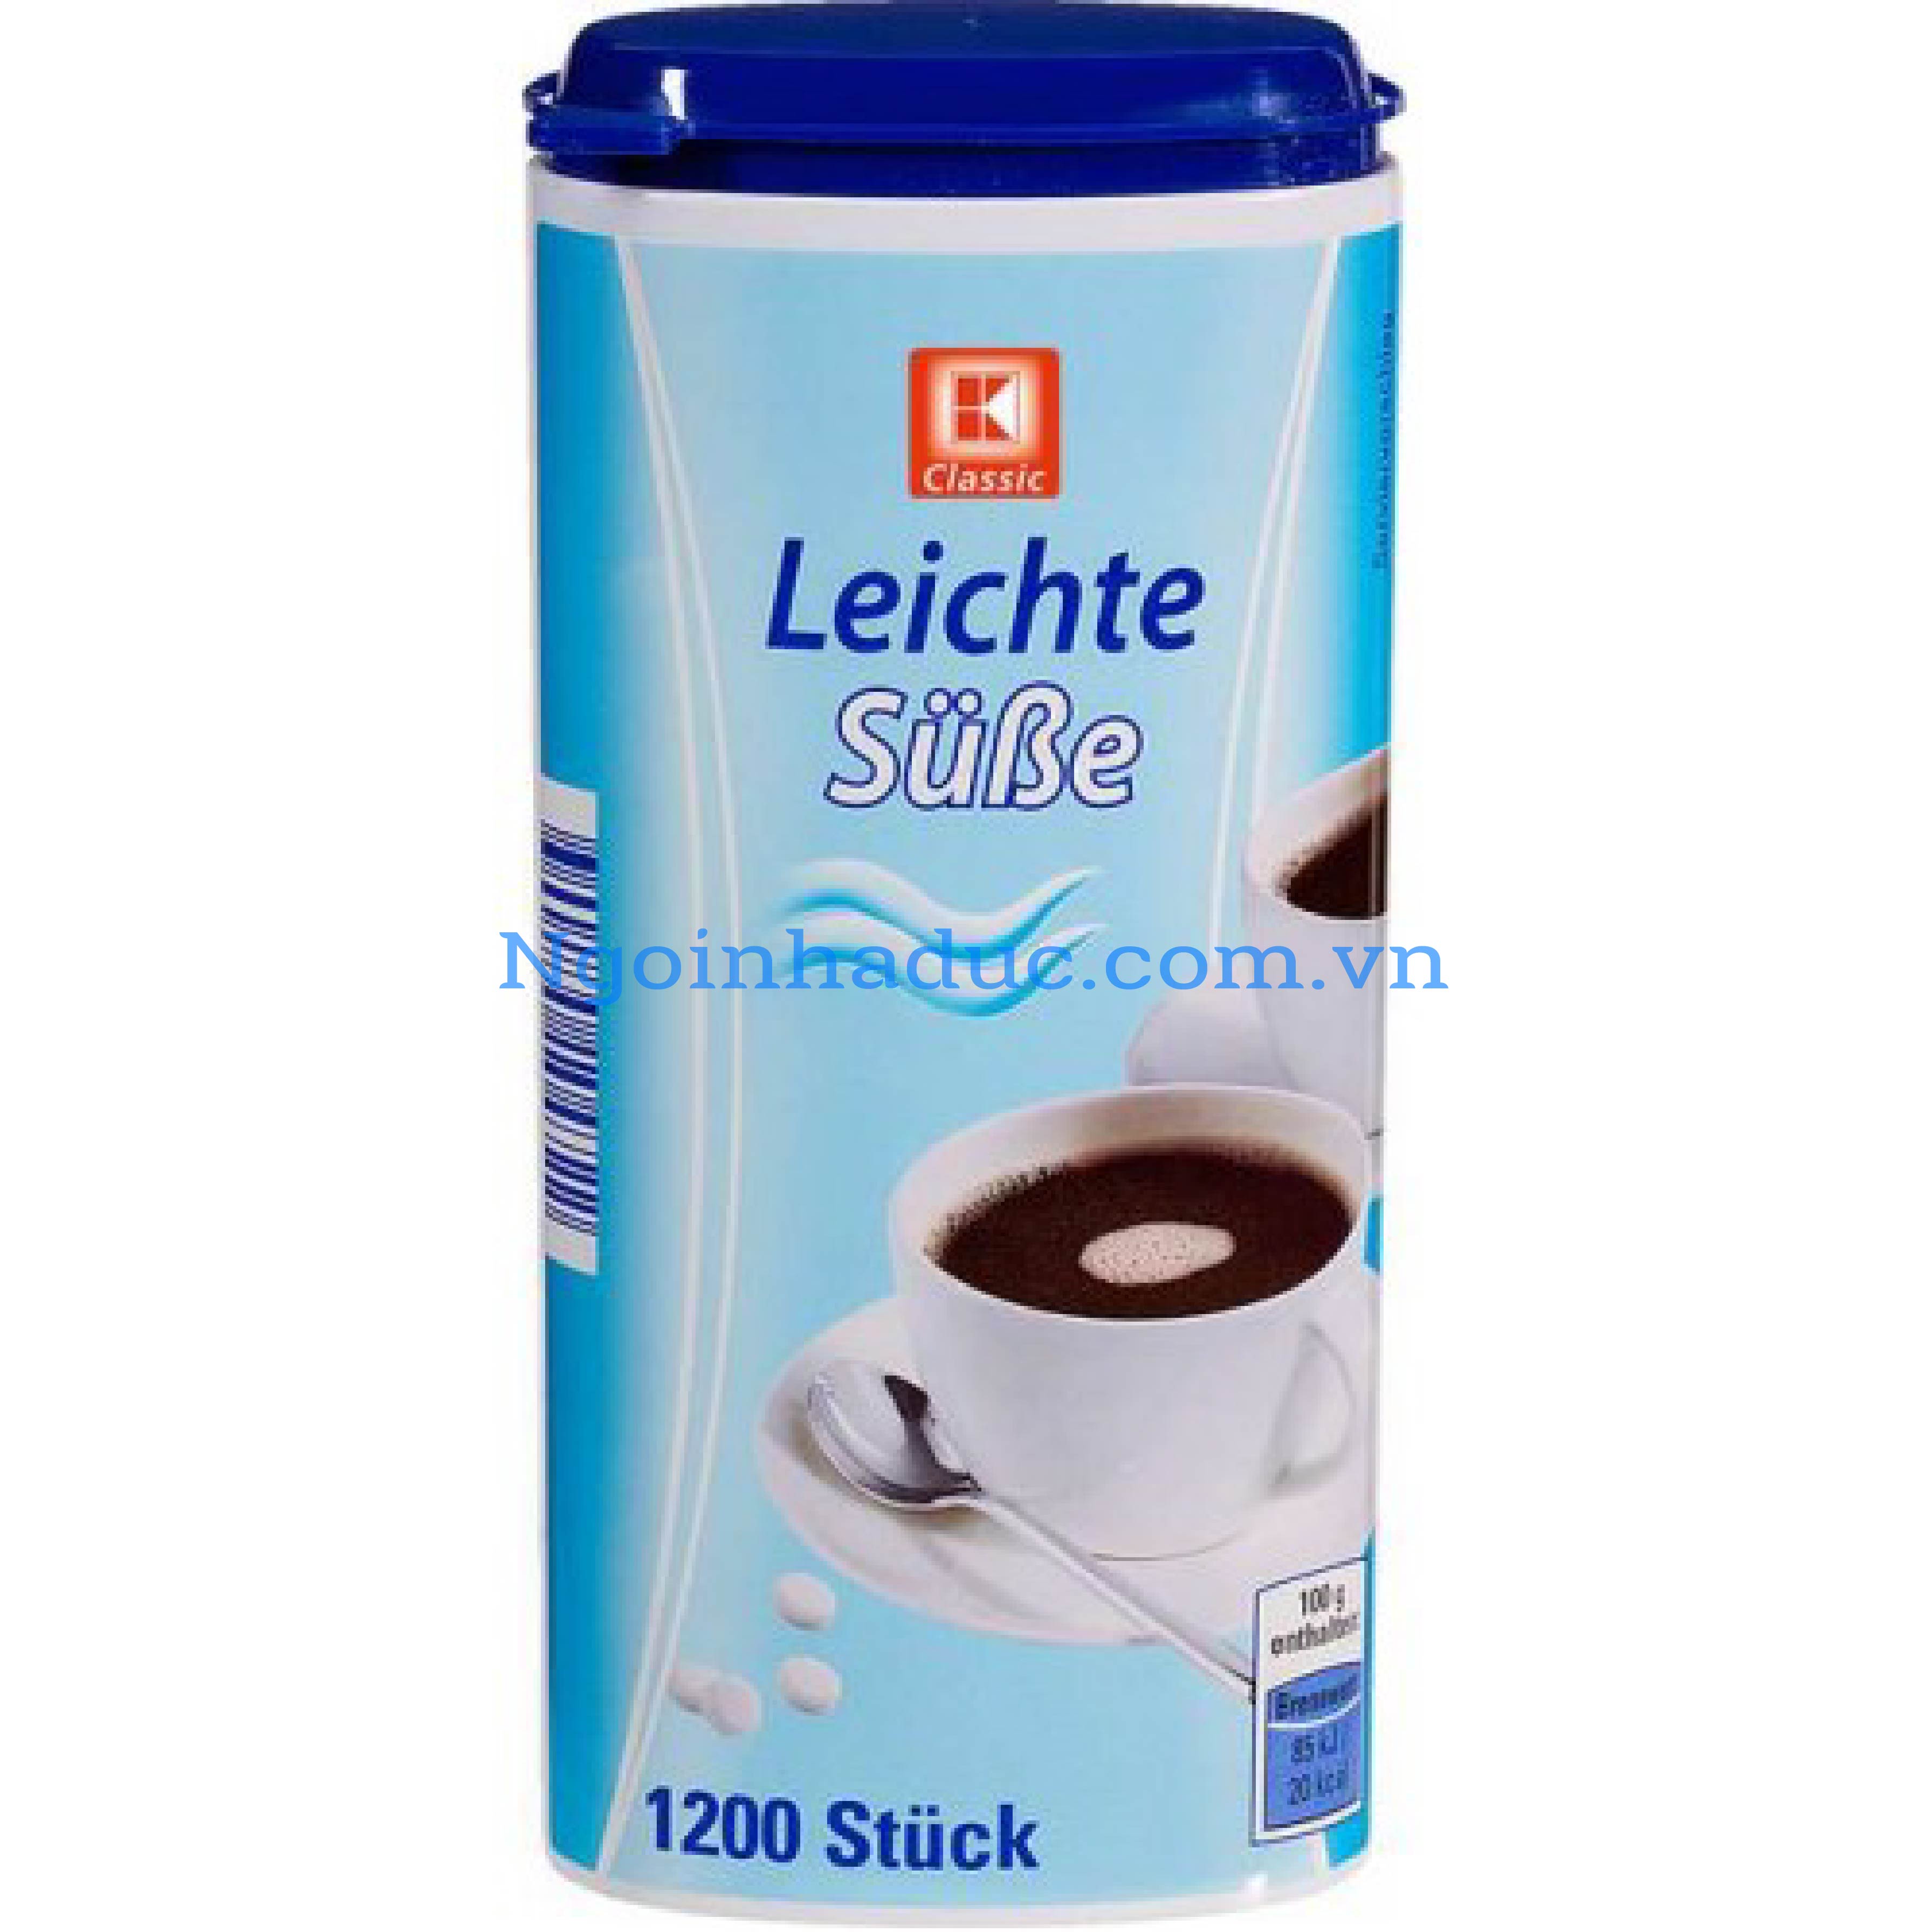 Đường ăn kiêng Leichte - Sube (hộp 1200v)